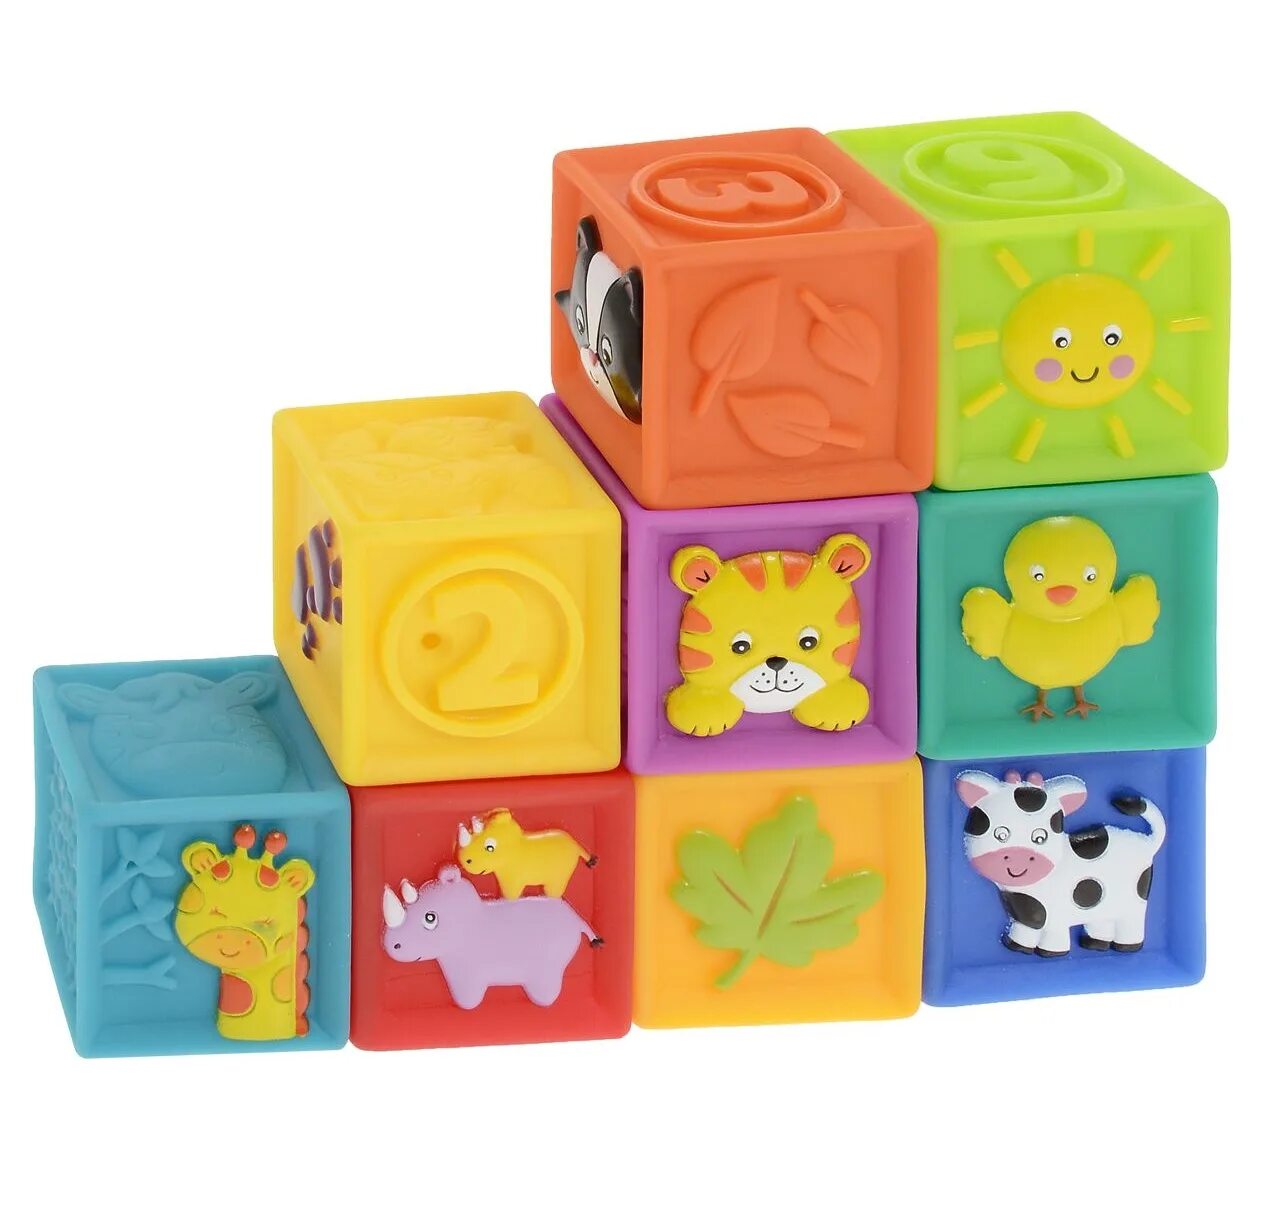 Кубики большие цена. Кубики little Hero мягкие. Резиновые кубики для детей. Развивающий кубик для детей. Силиконовые кубики для детей.